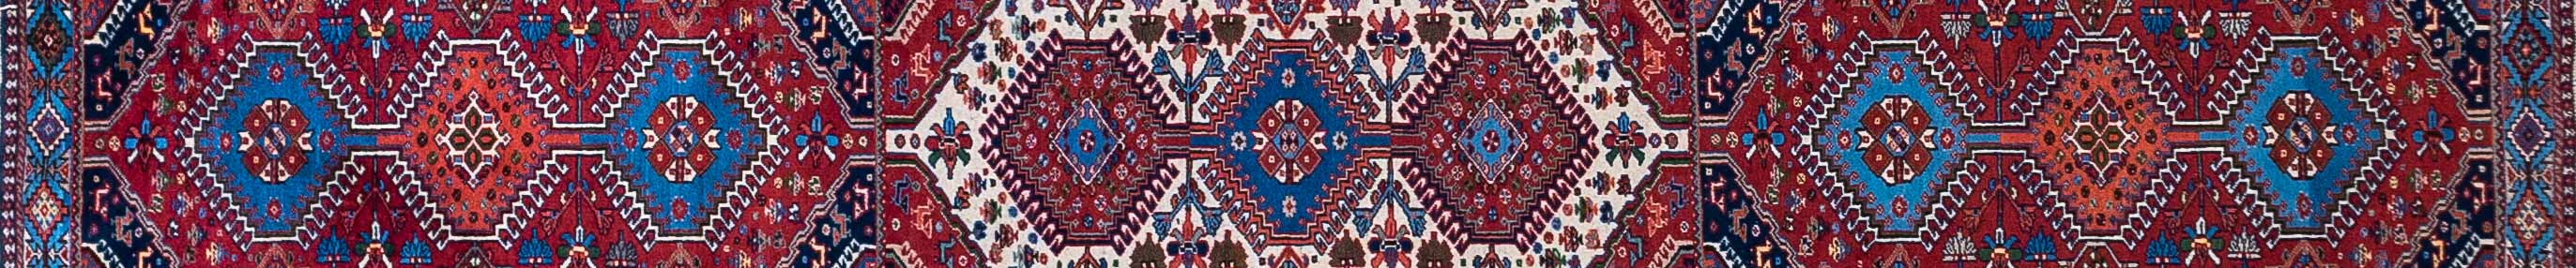 Yalameh Persian Carpet Rug N1Carpet Canada Montreal Tapis Persan 1950